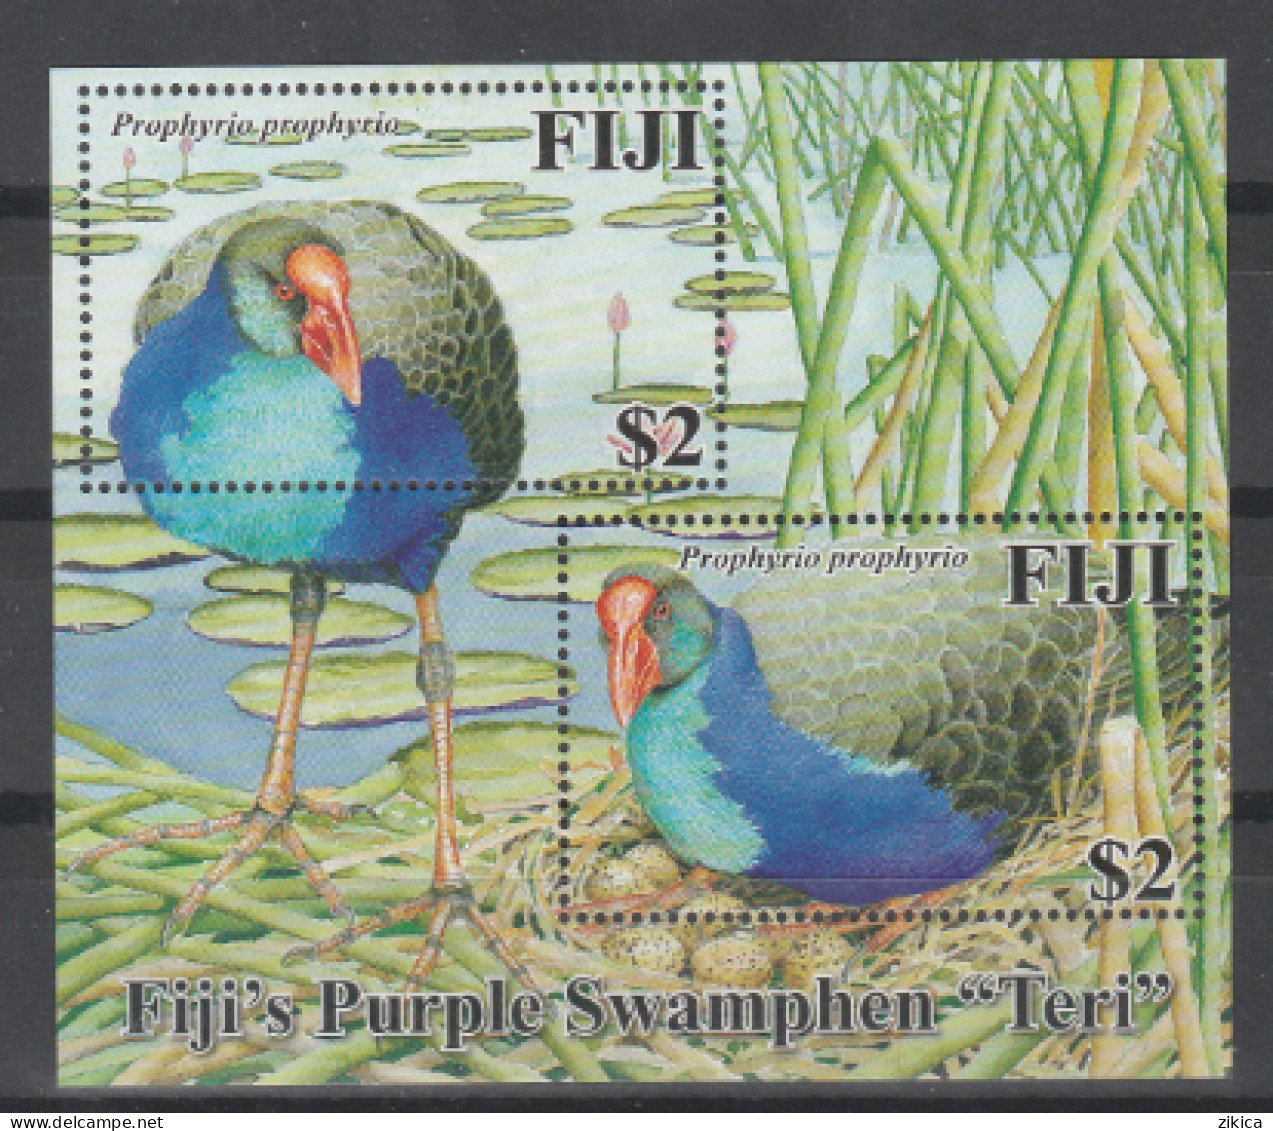 Fiji - 2006 Fiji's "Teri" Purple Swamp-hen.Fauna/Birds.S/S,MNH** - Fiji (1970-...)